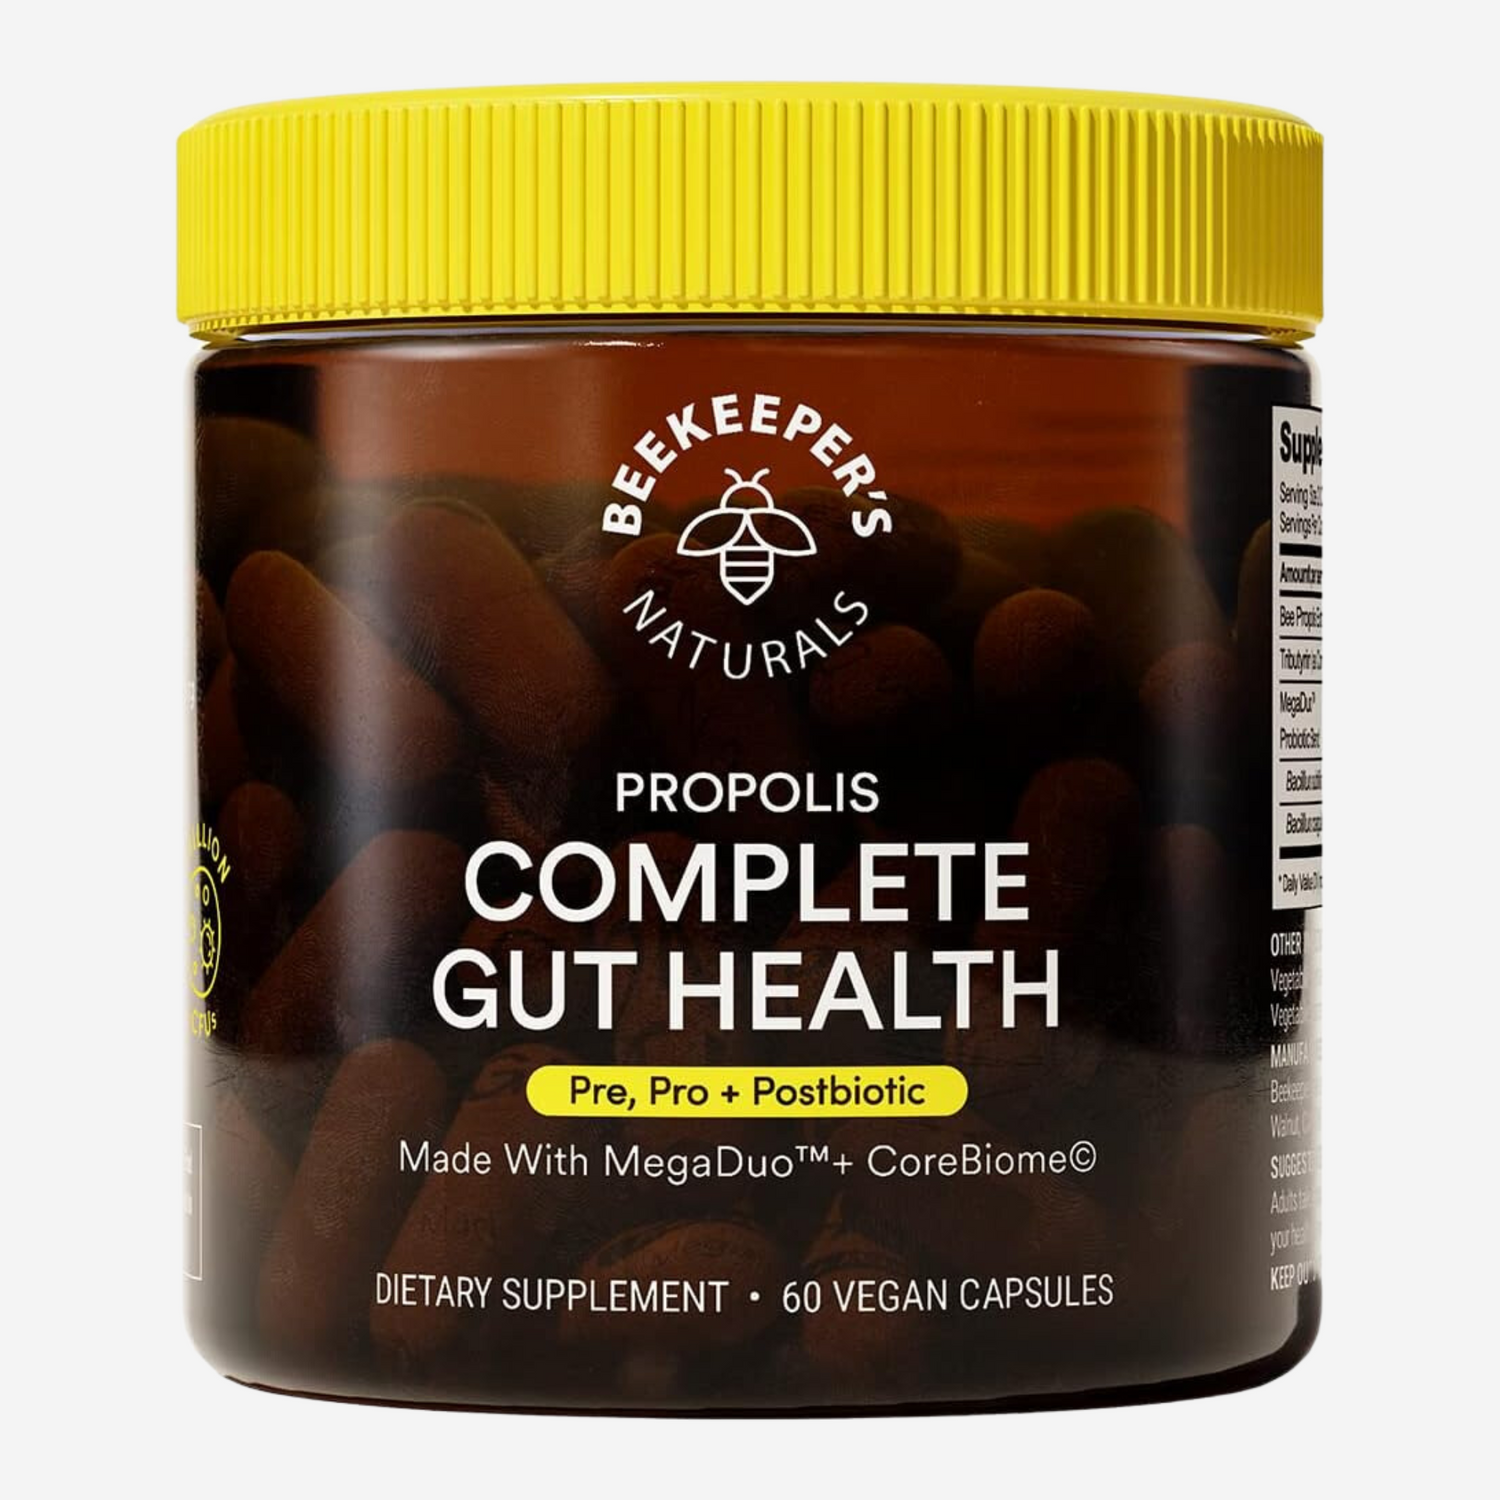 Beekeeper's Naturals Complete Gut Health, 3-in-1 Prebiotic, Postbiotic, Probiotics for Digestive Health & Bloating Relief for Women & Men